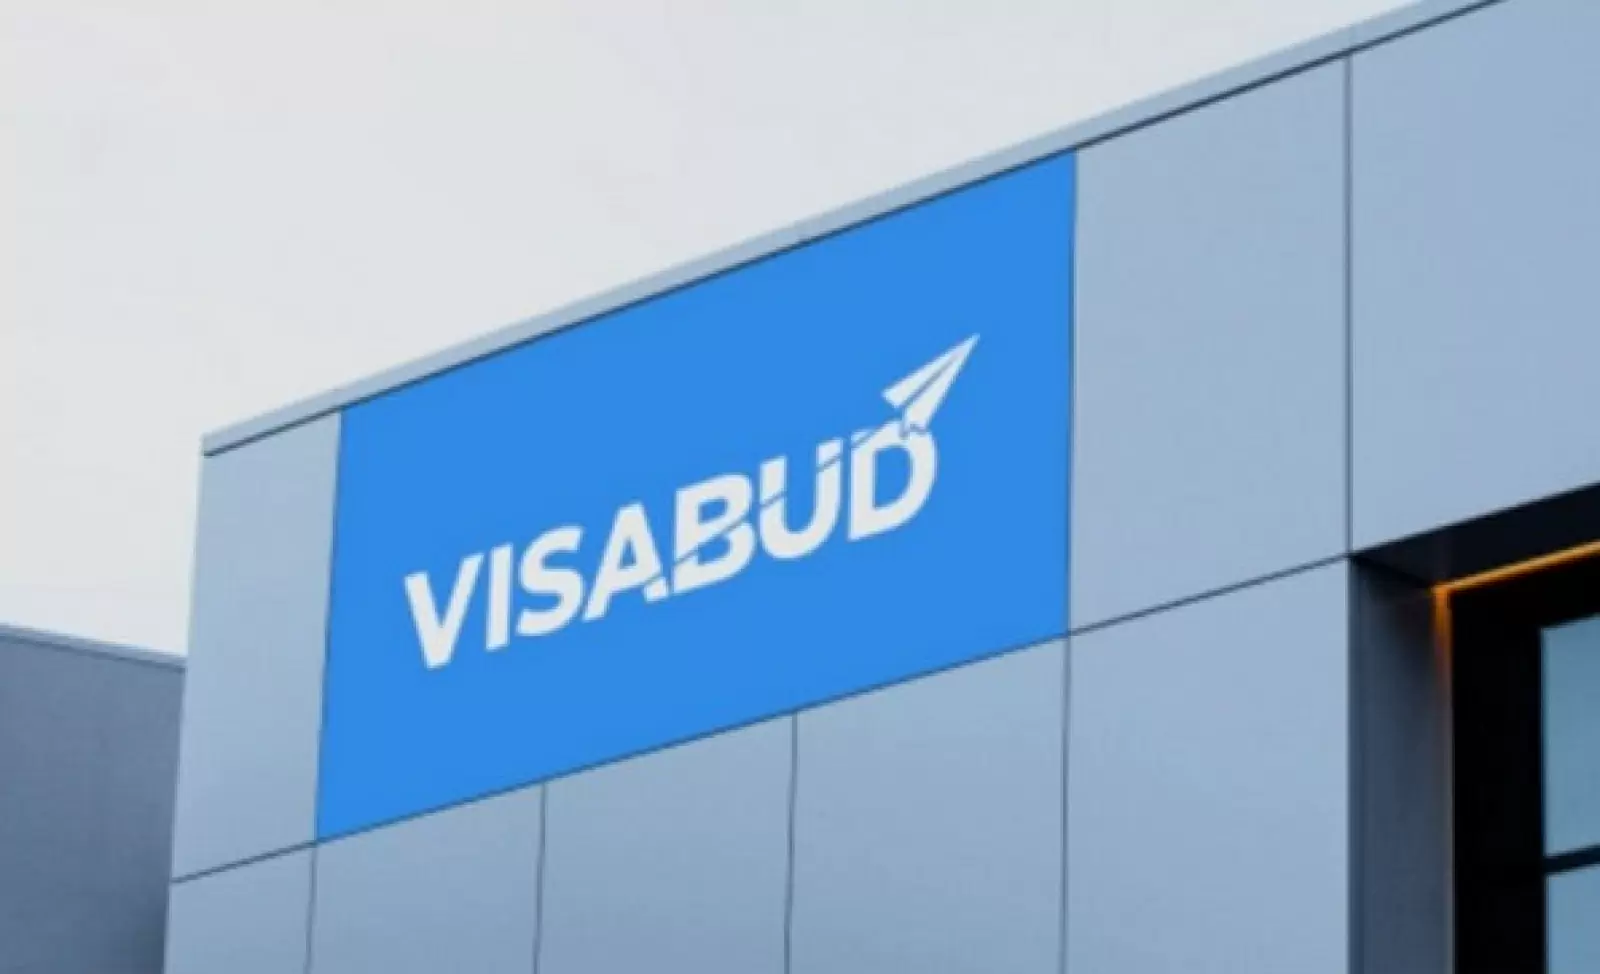 VisaBud: Streamlining the Visa Application Journey